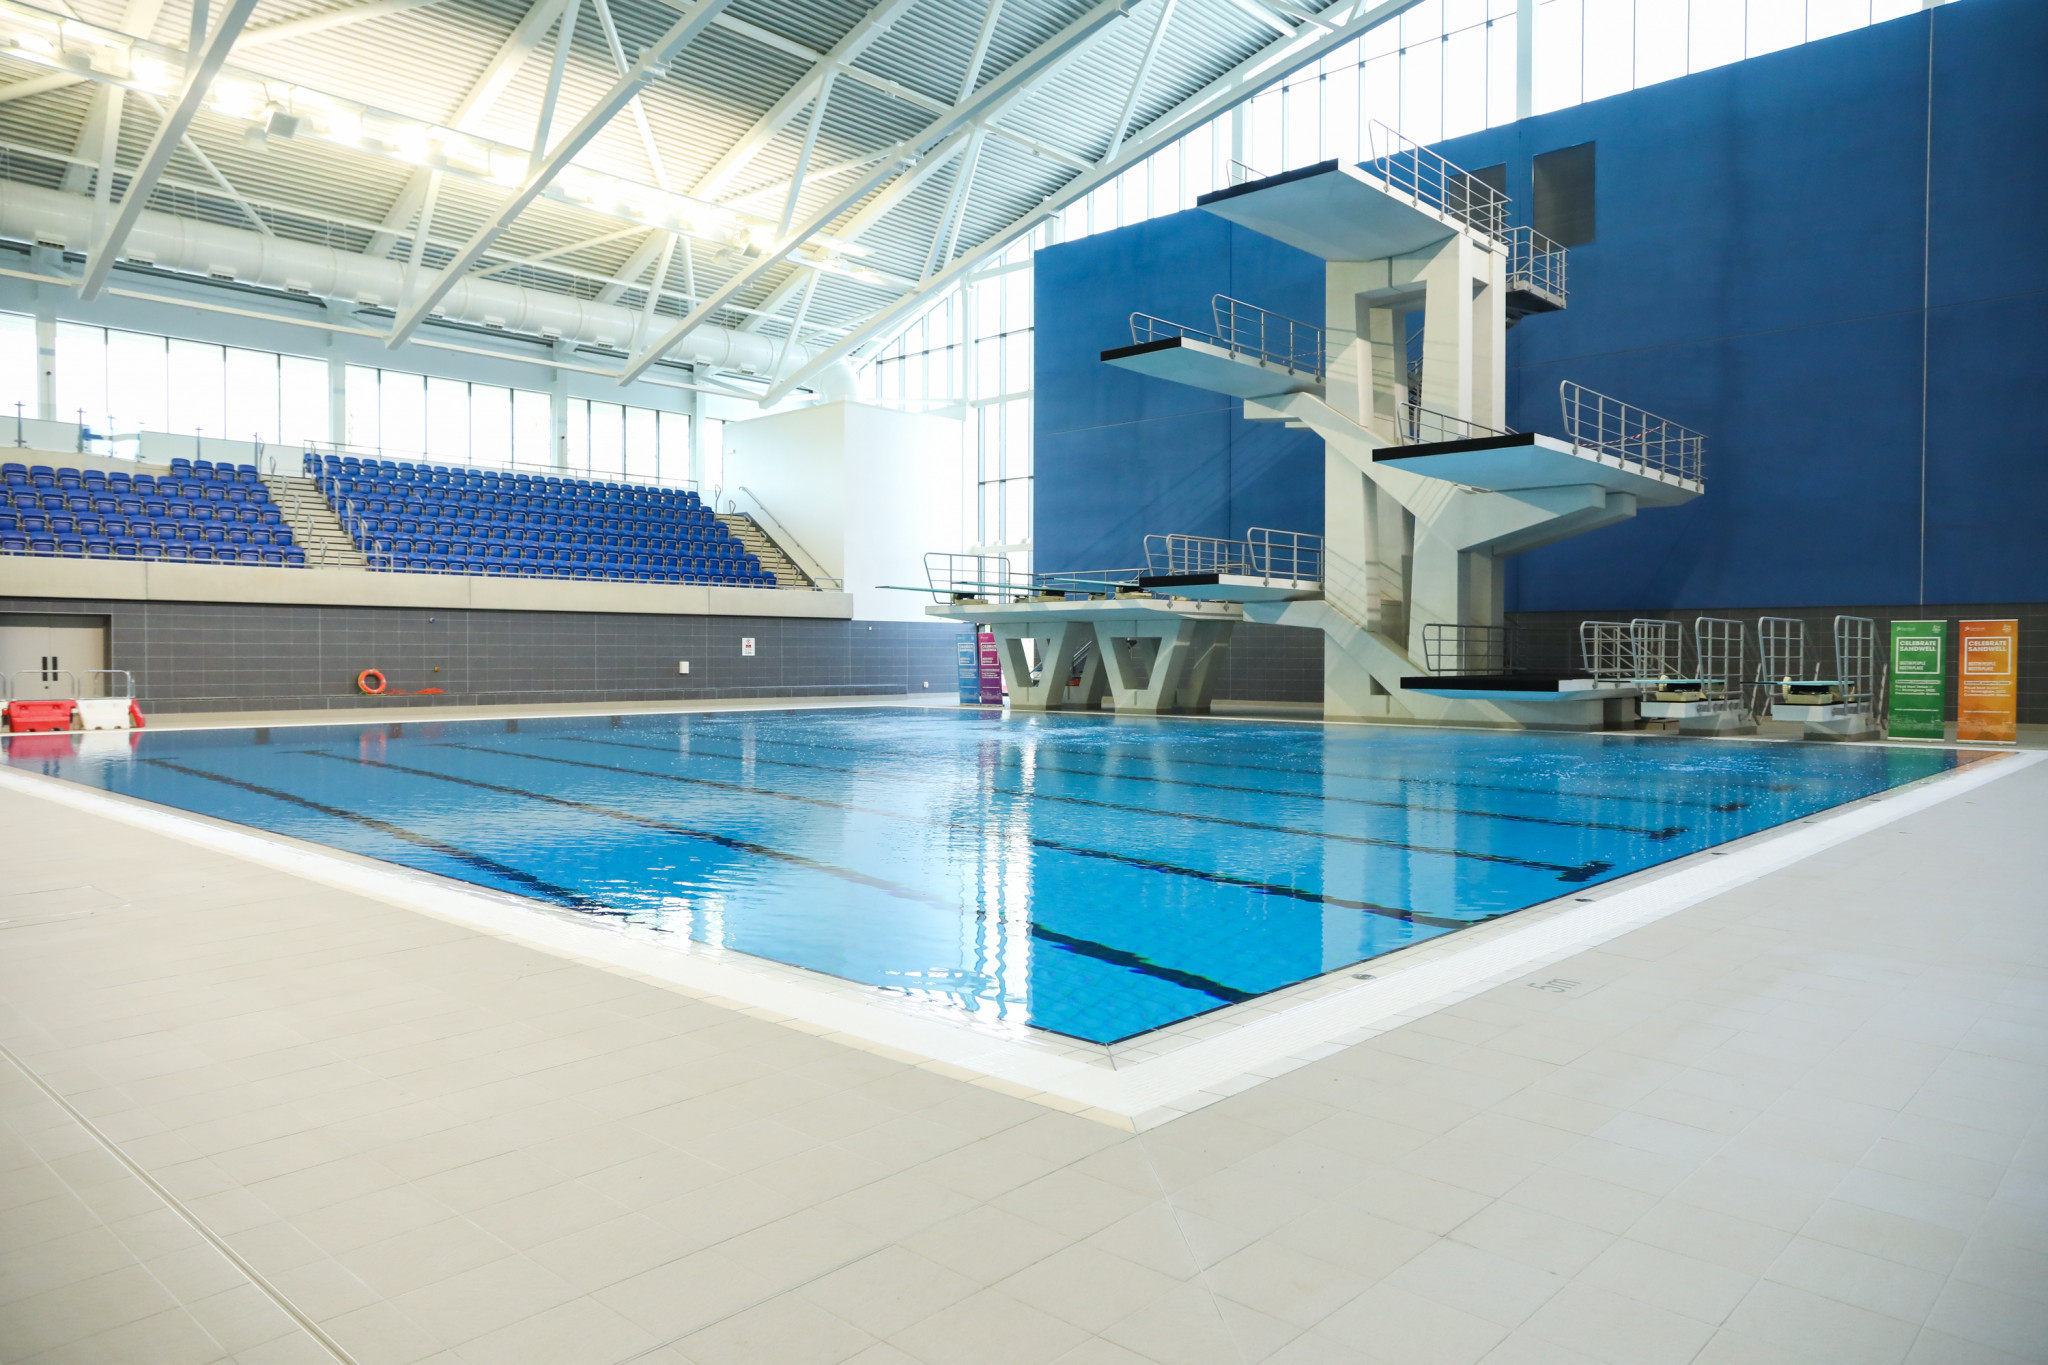 Aquatics events at Birmingham 2022 are due to be held at the newly-built Sandwell Aquatics Centre ©Birmingham 2022